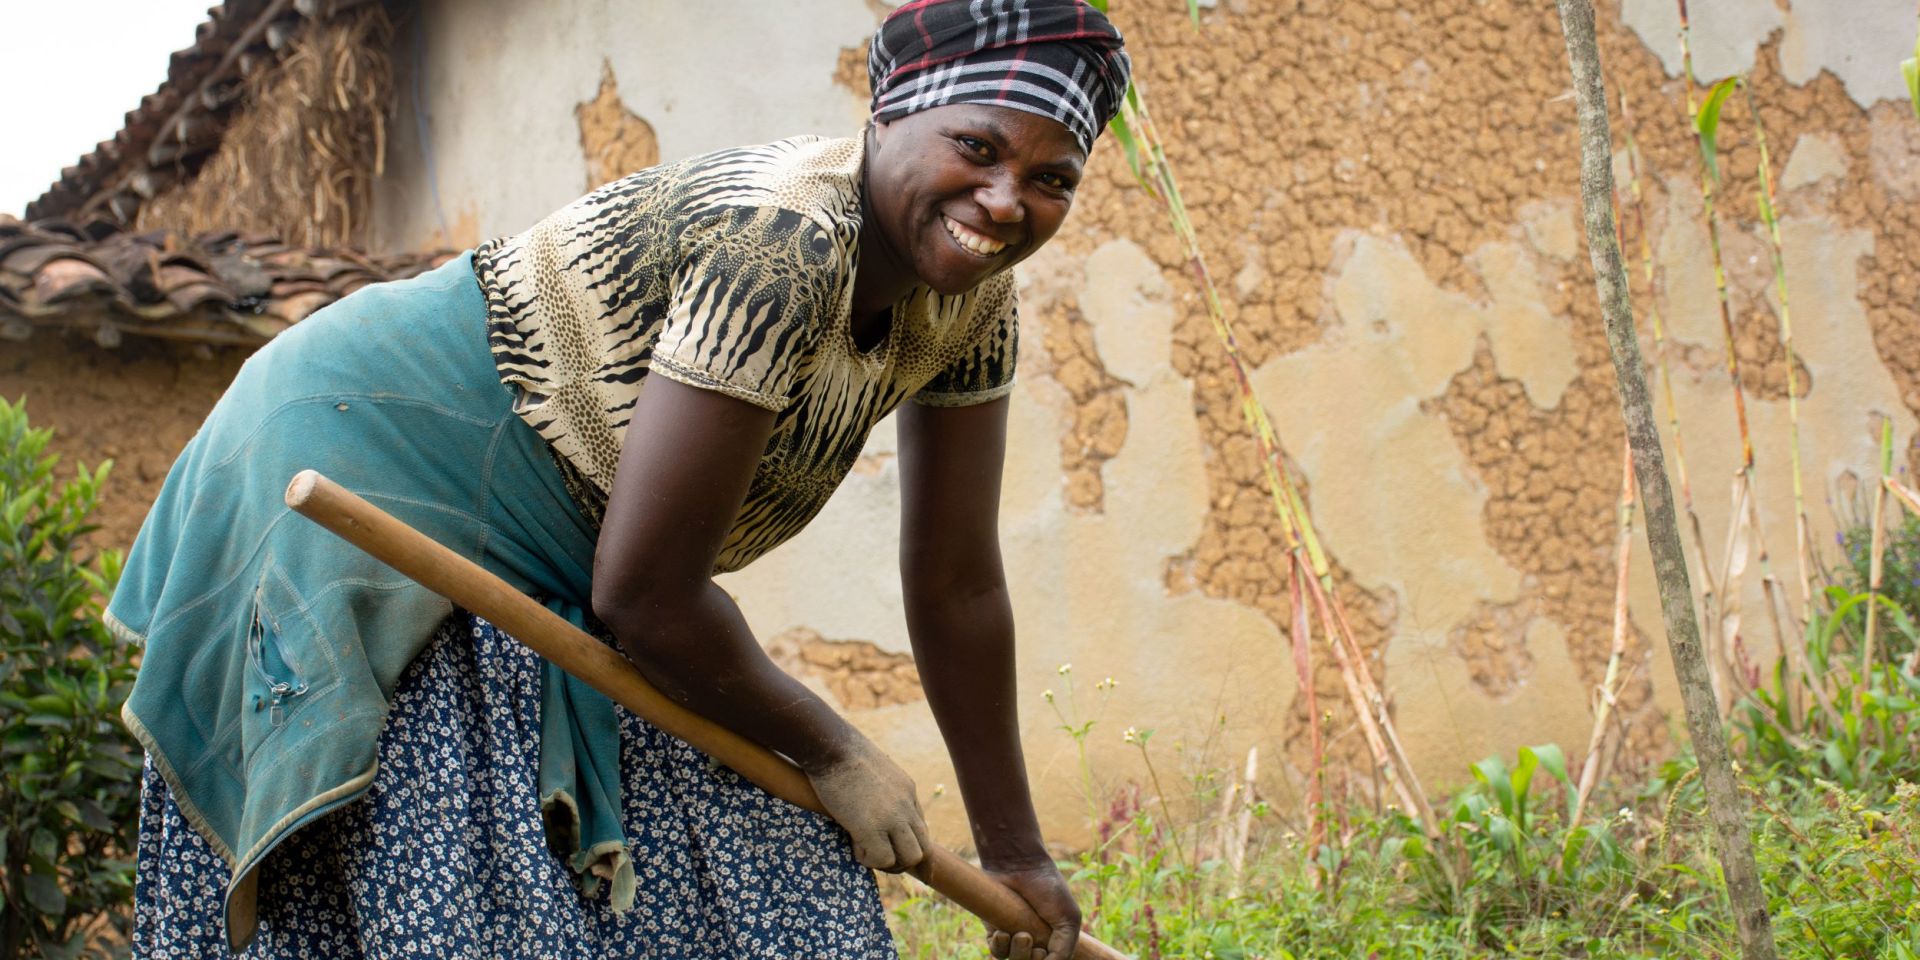 A smiling woman farmer tills her land